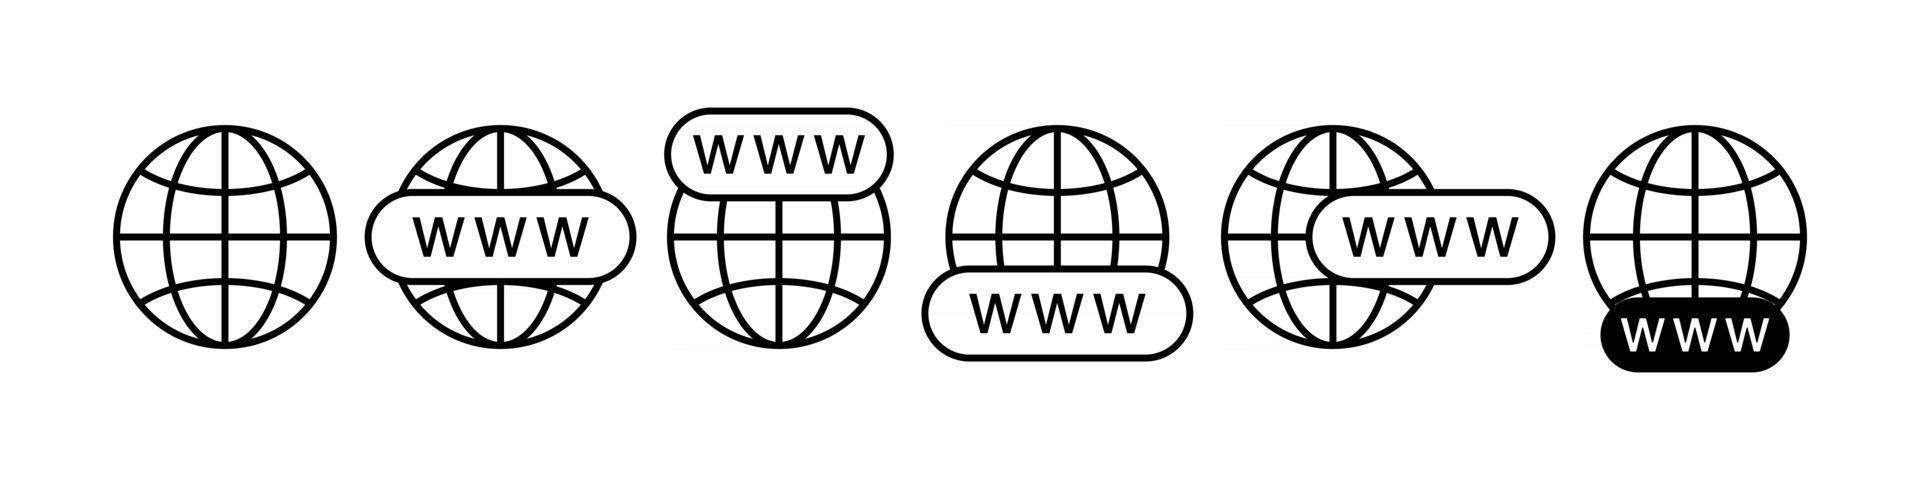 internet www zoek iconen set vector